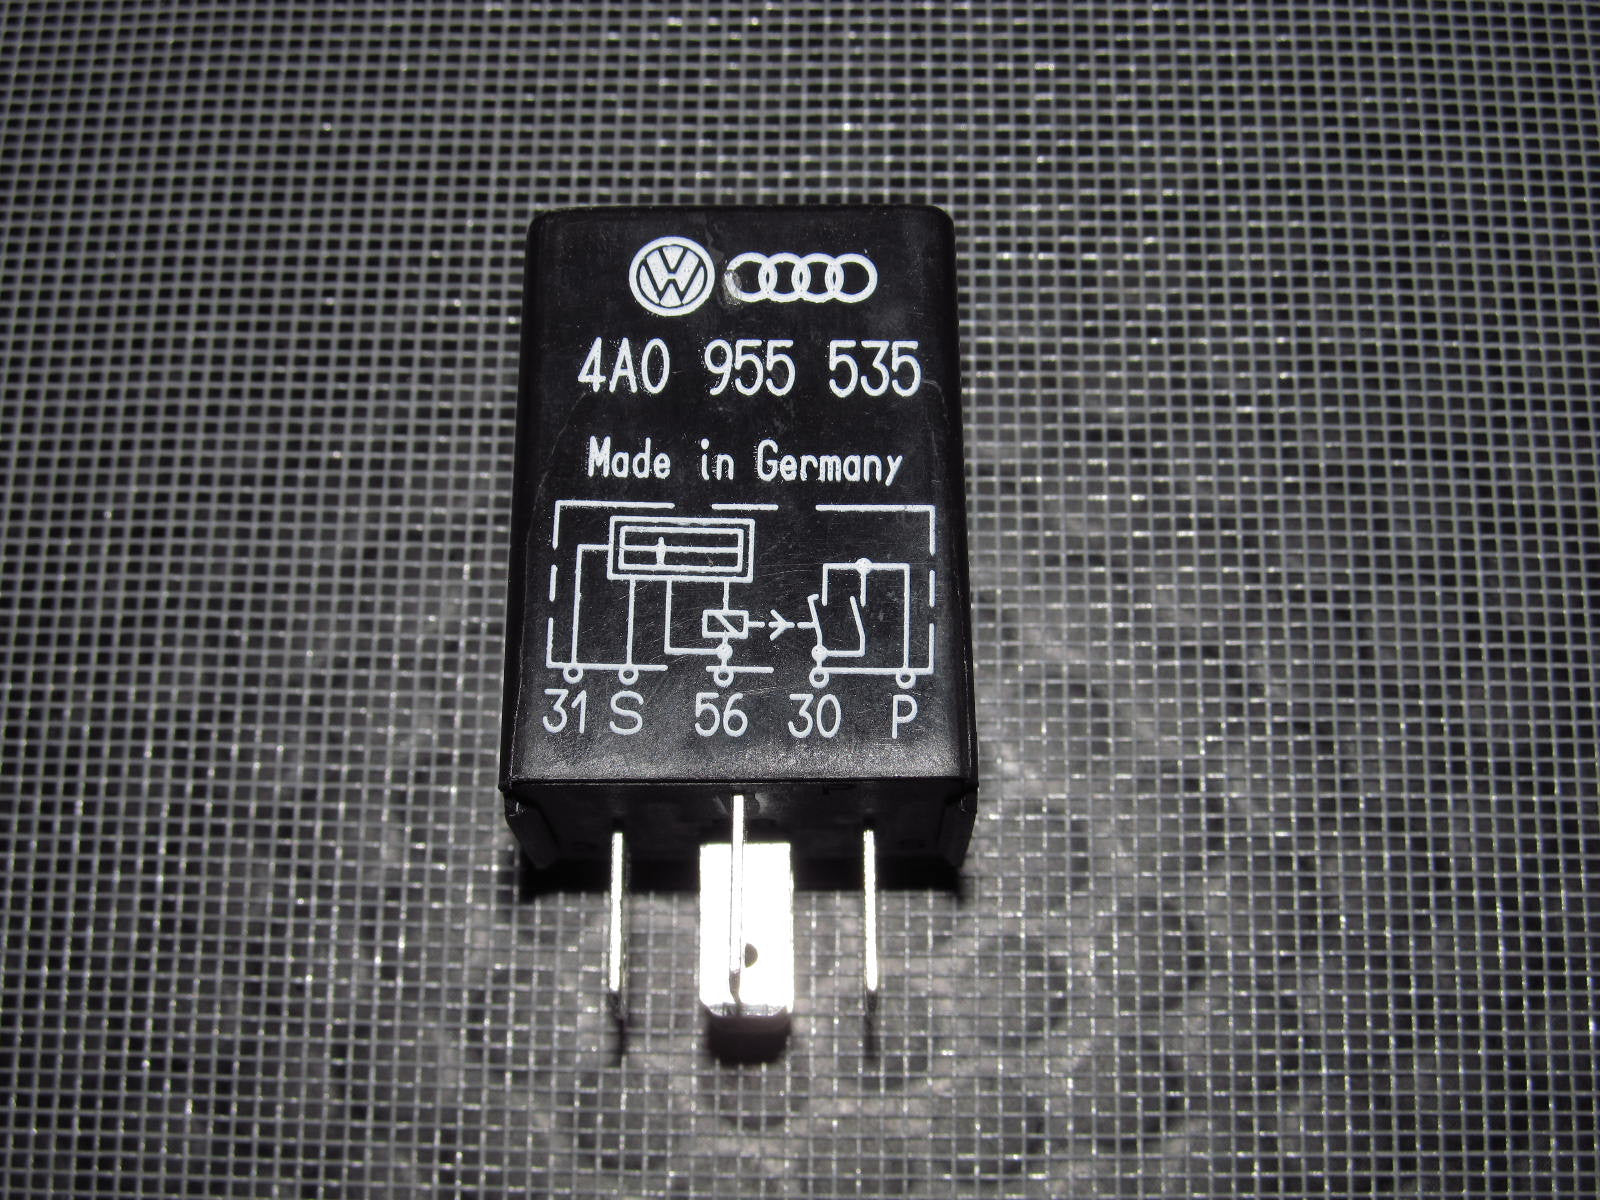 Audi & Volkswagen Universal Relay 4A0 955 535